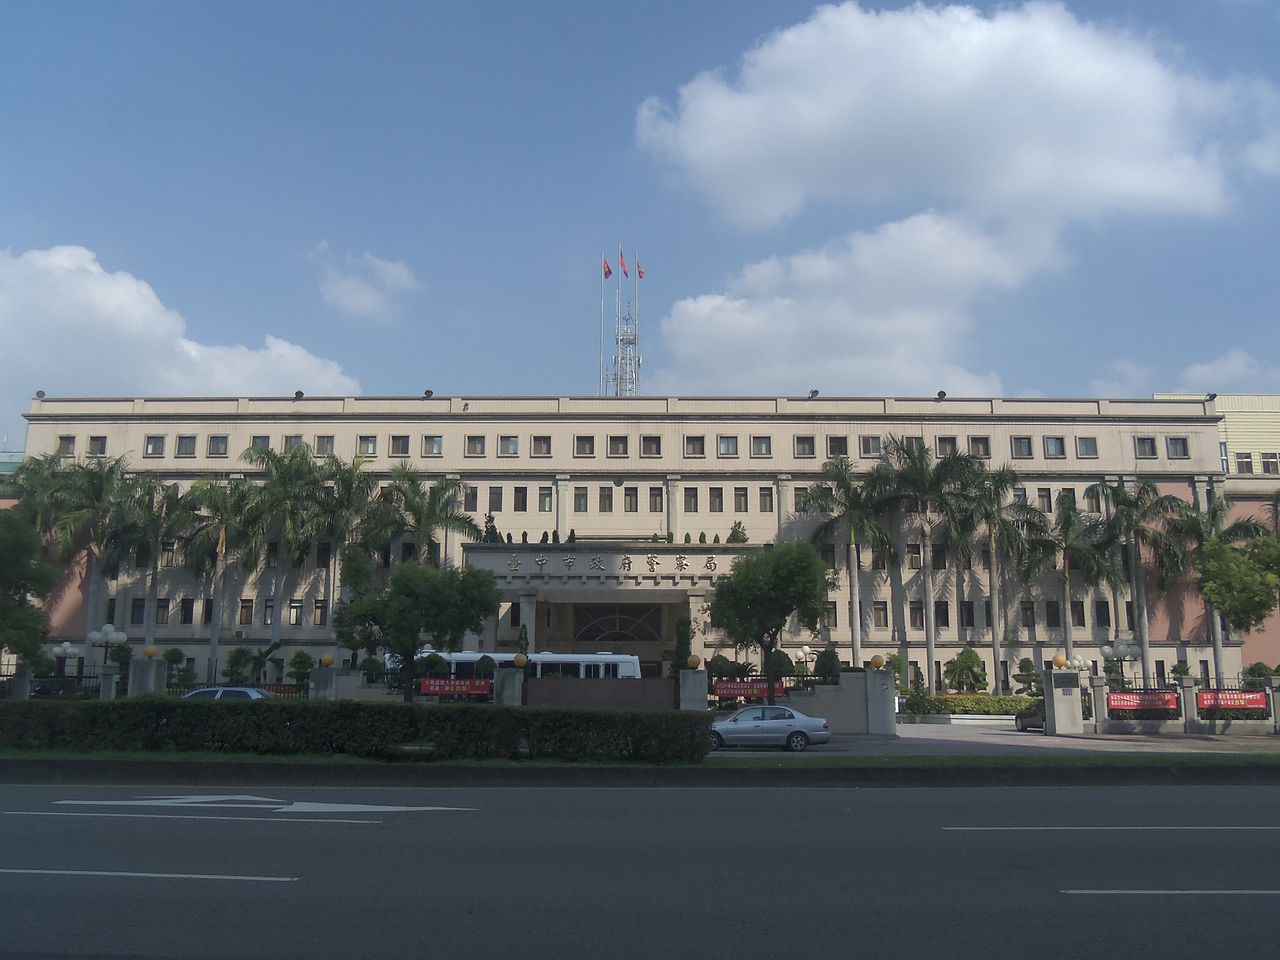 台中市政府警察局